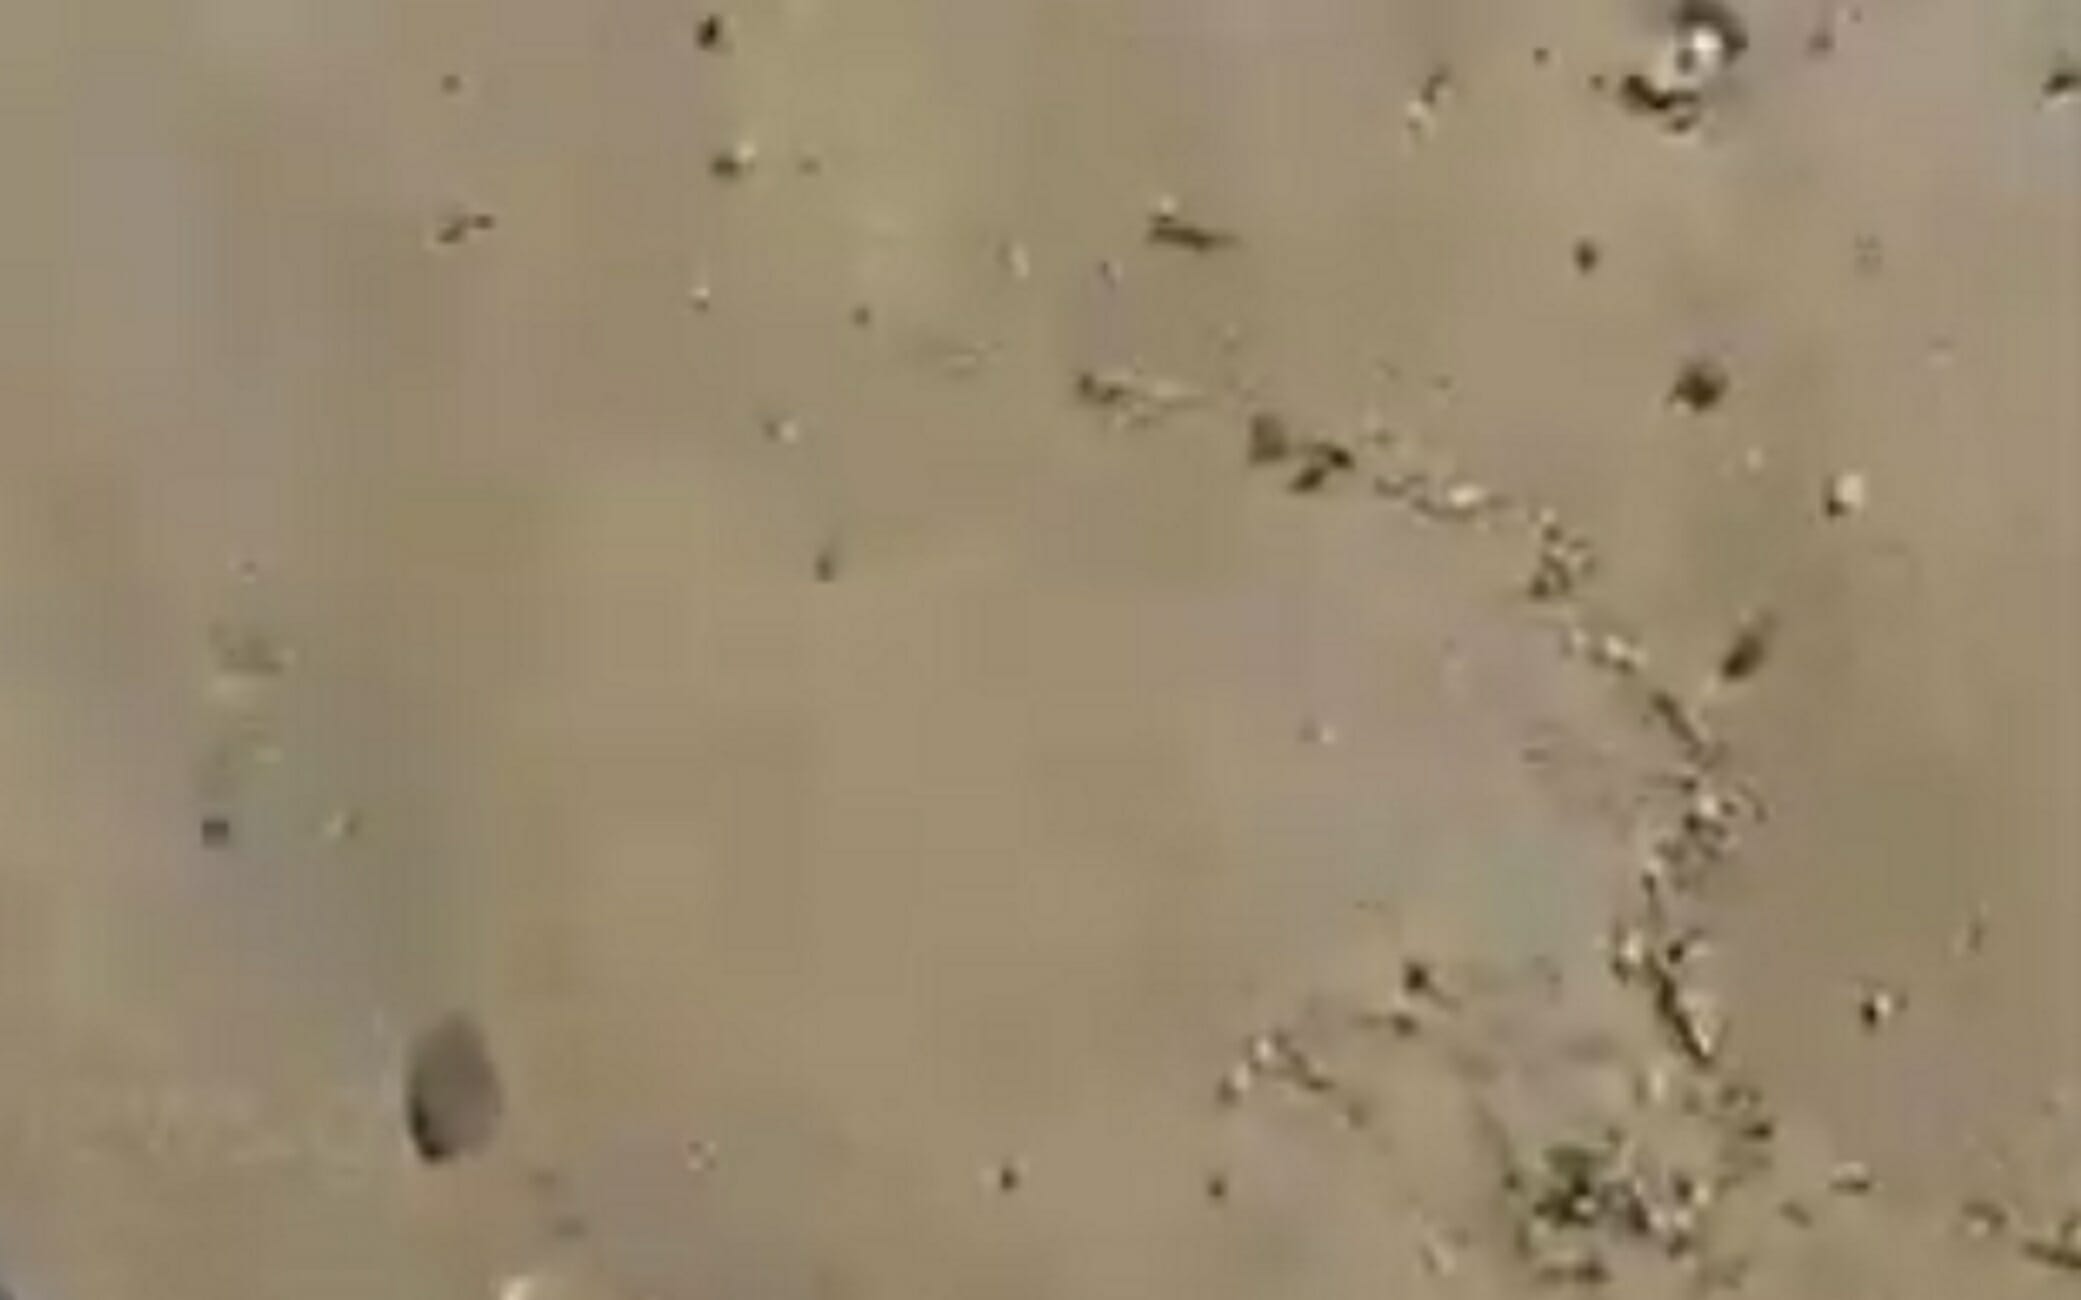 Κρήτη: Περπατούσαν στην αμμουδιά και ξαφνικά έπεσαν πάνω σε αυτές τις εικόνες που θα θυμούνται για καιρό (Βίντεο)